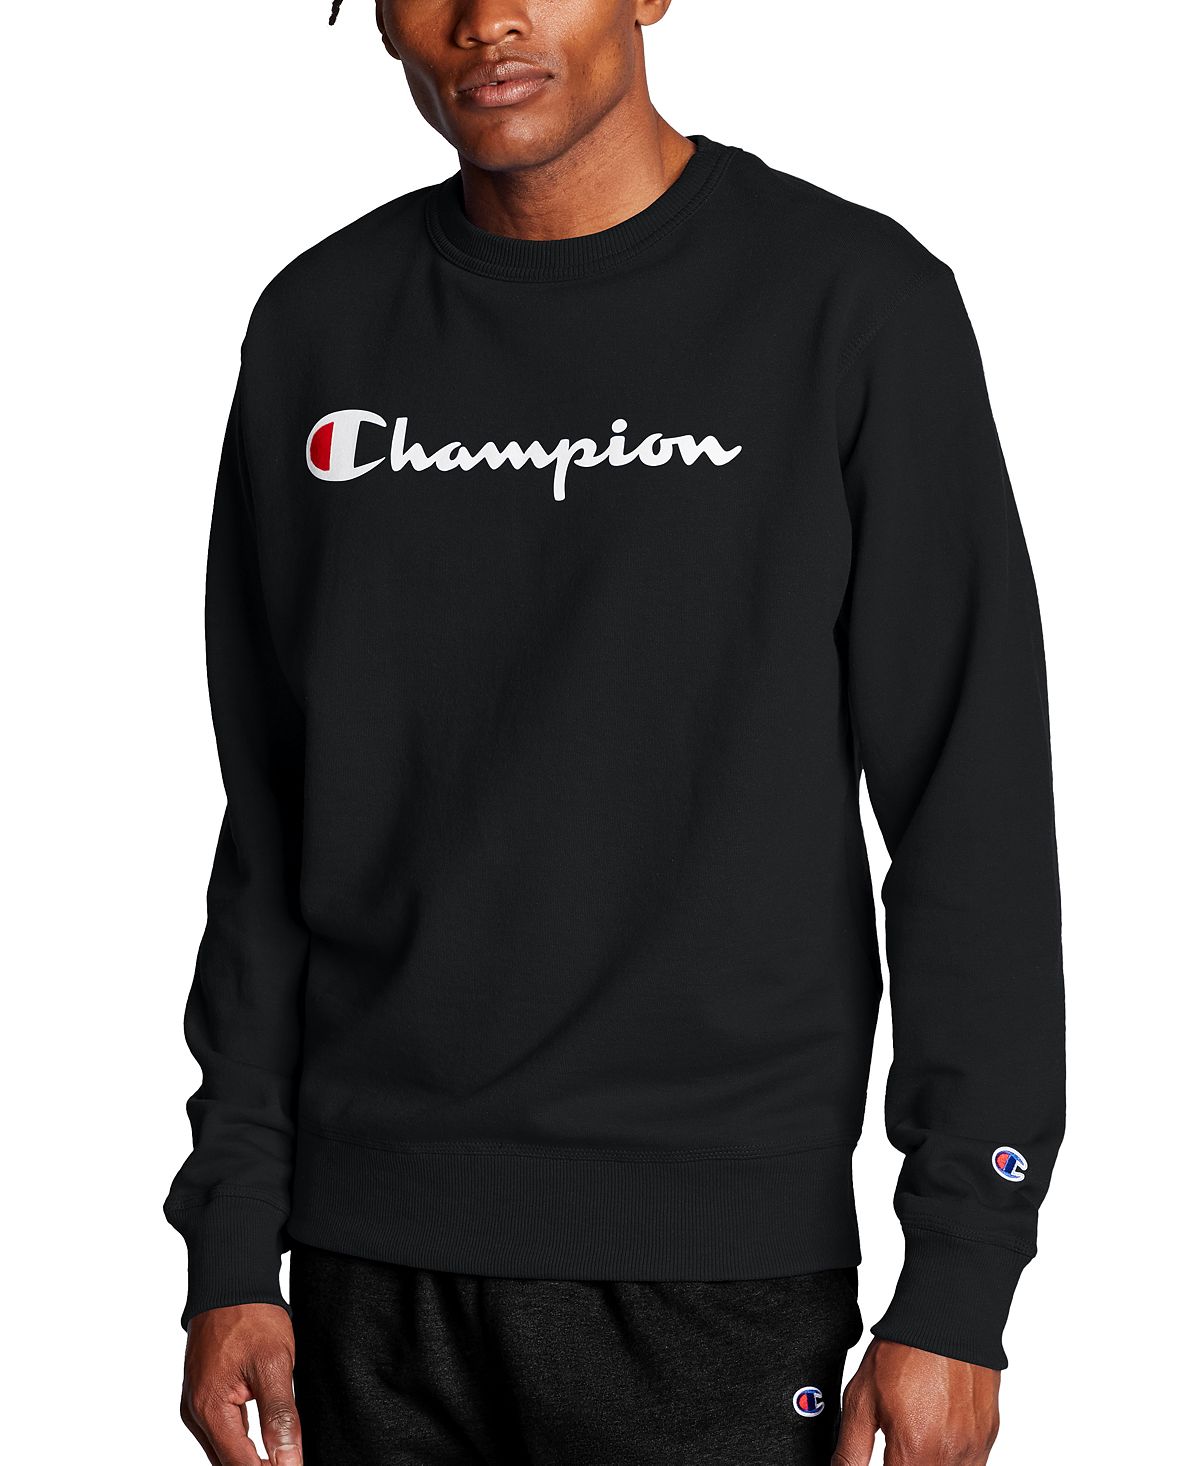 Мужской флисовый свитшот с логотипом Powerblend Champion